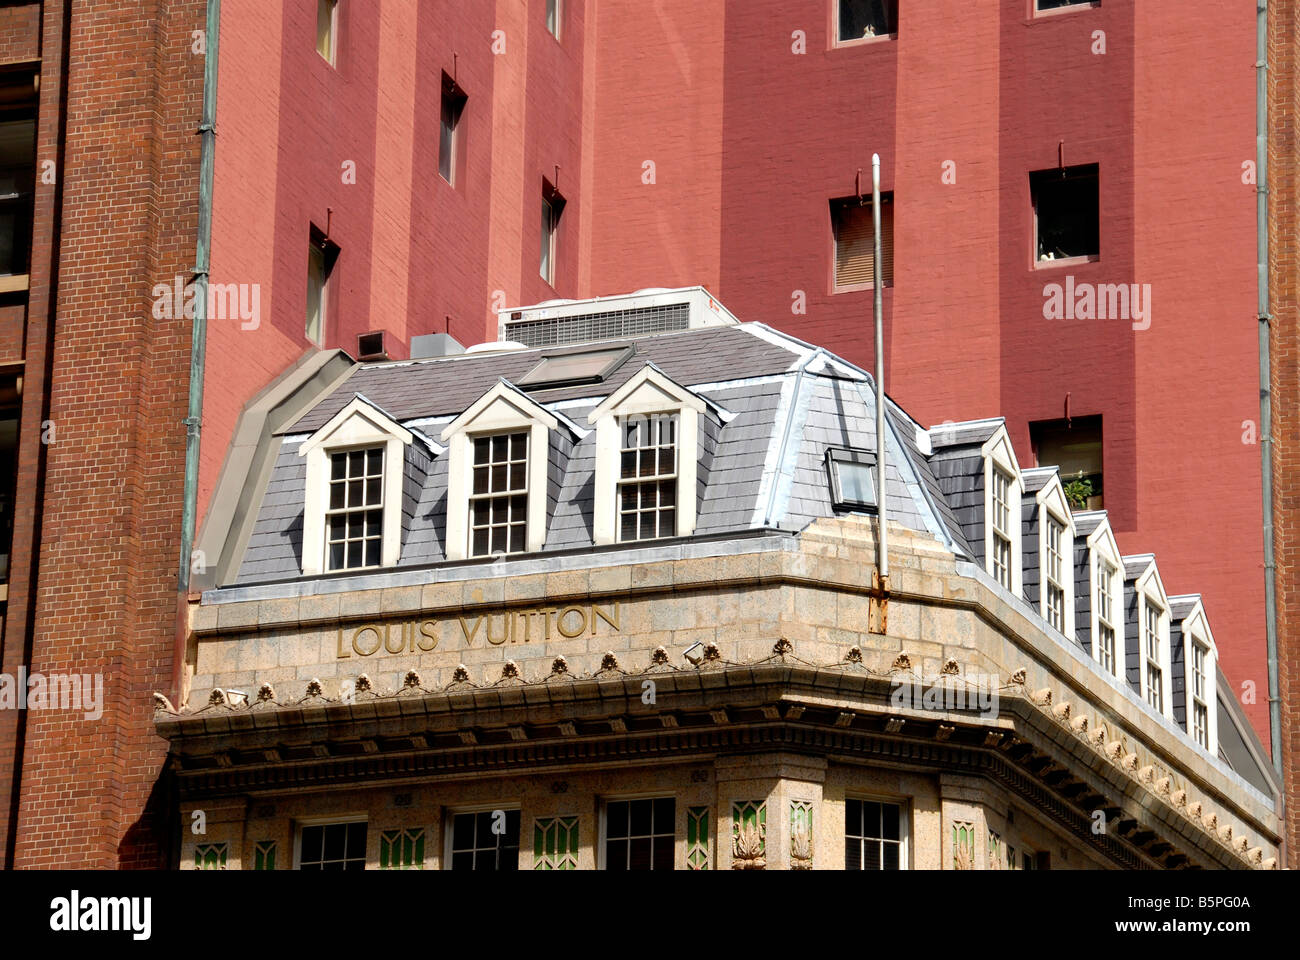 Louis Vuitton house, Sydney, Australia Stock Photo - Alamy